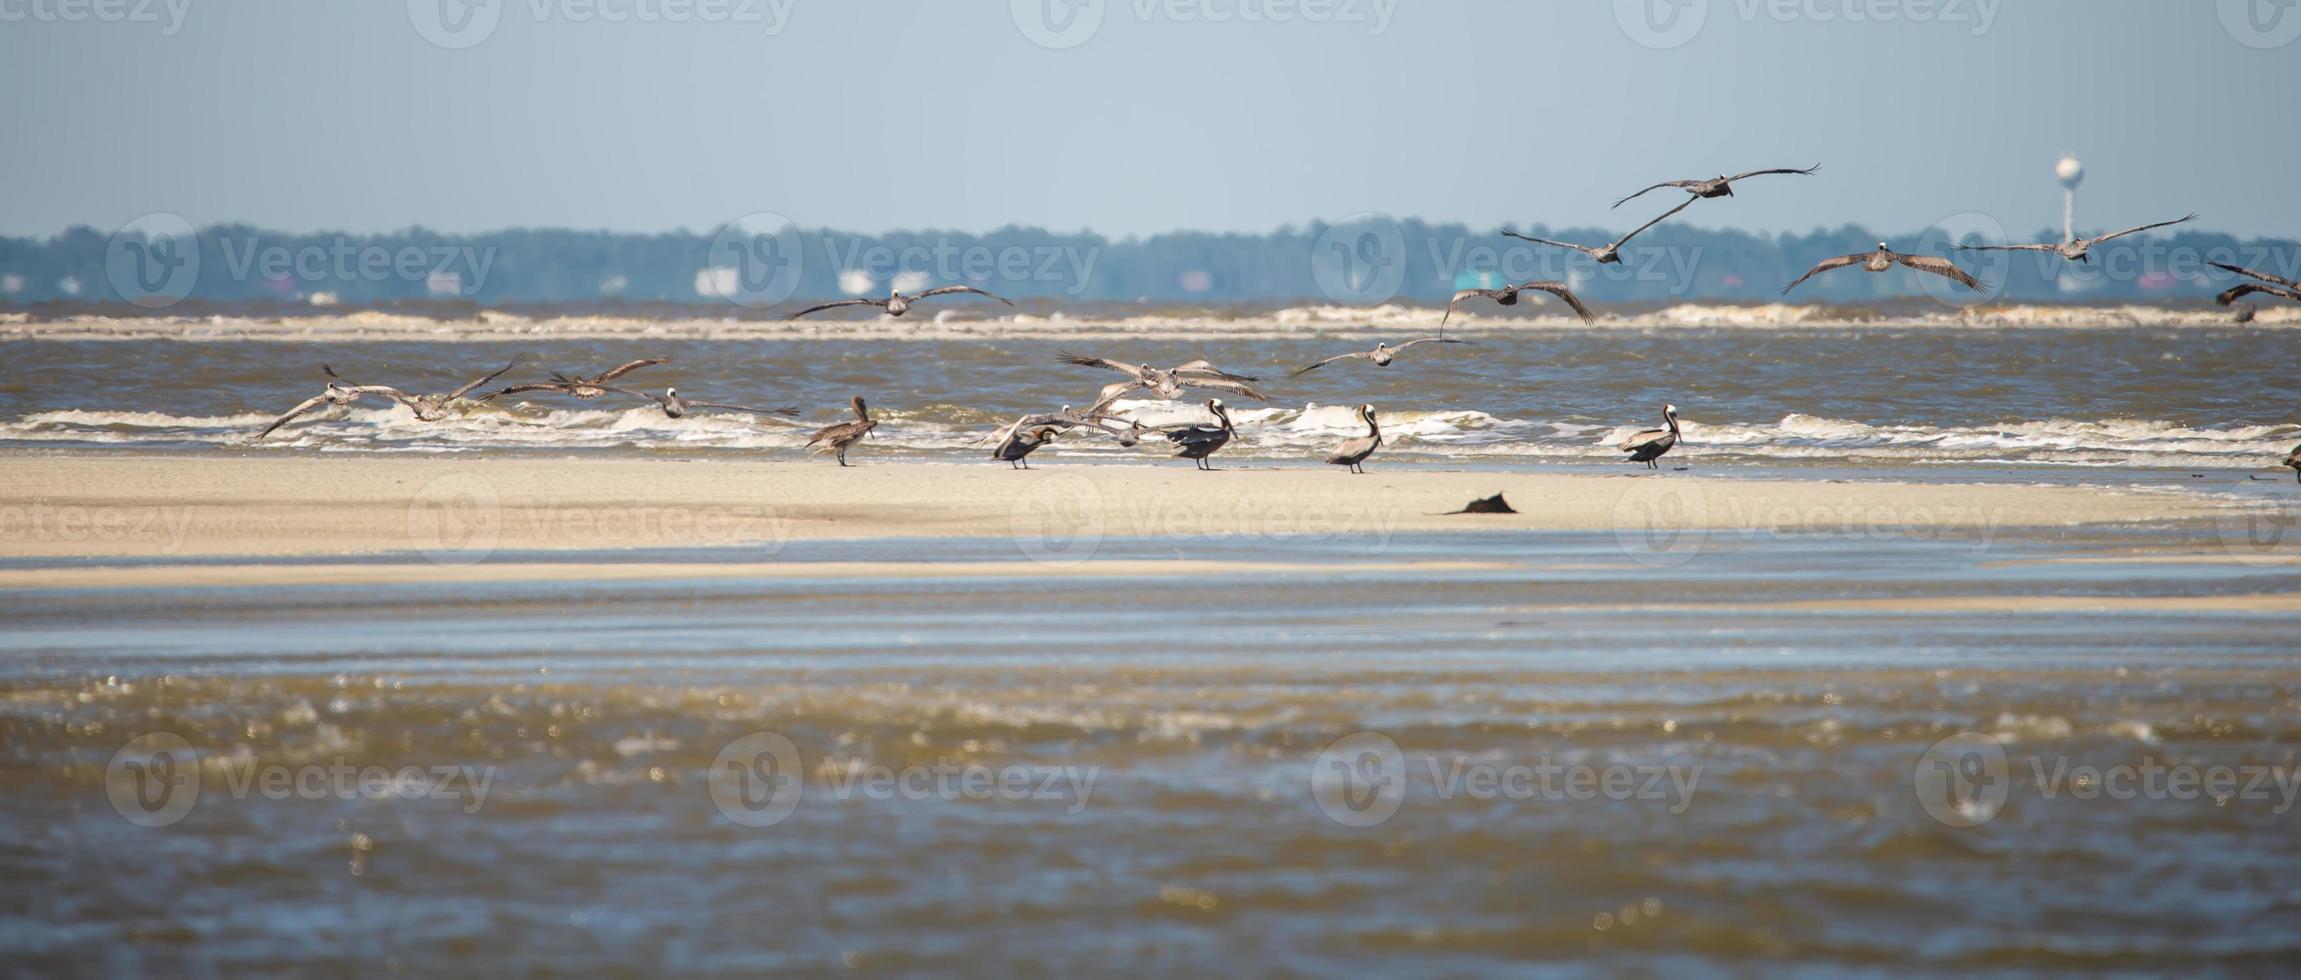 pellicani astratti in volo sulla spiaggia dell'oceano atlantico foto